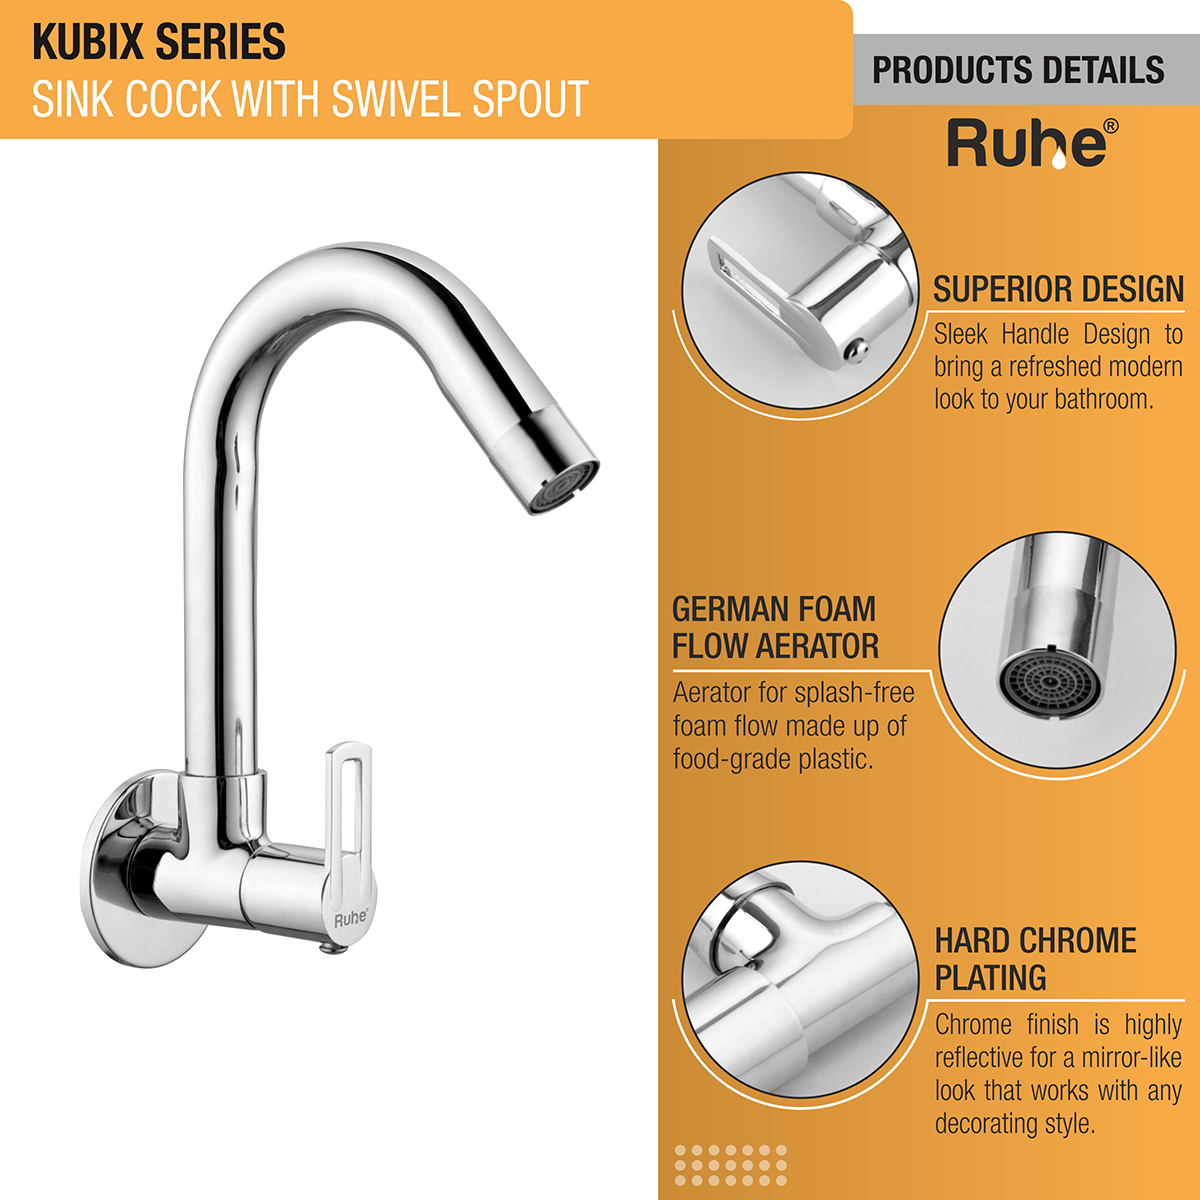 Kubix Sink Tap With Swivel Spout Faucet product details